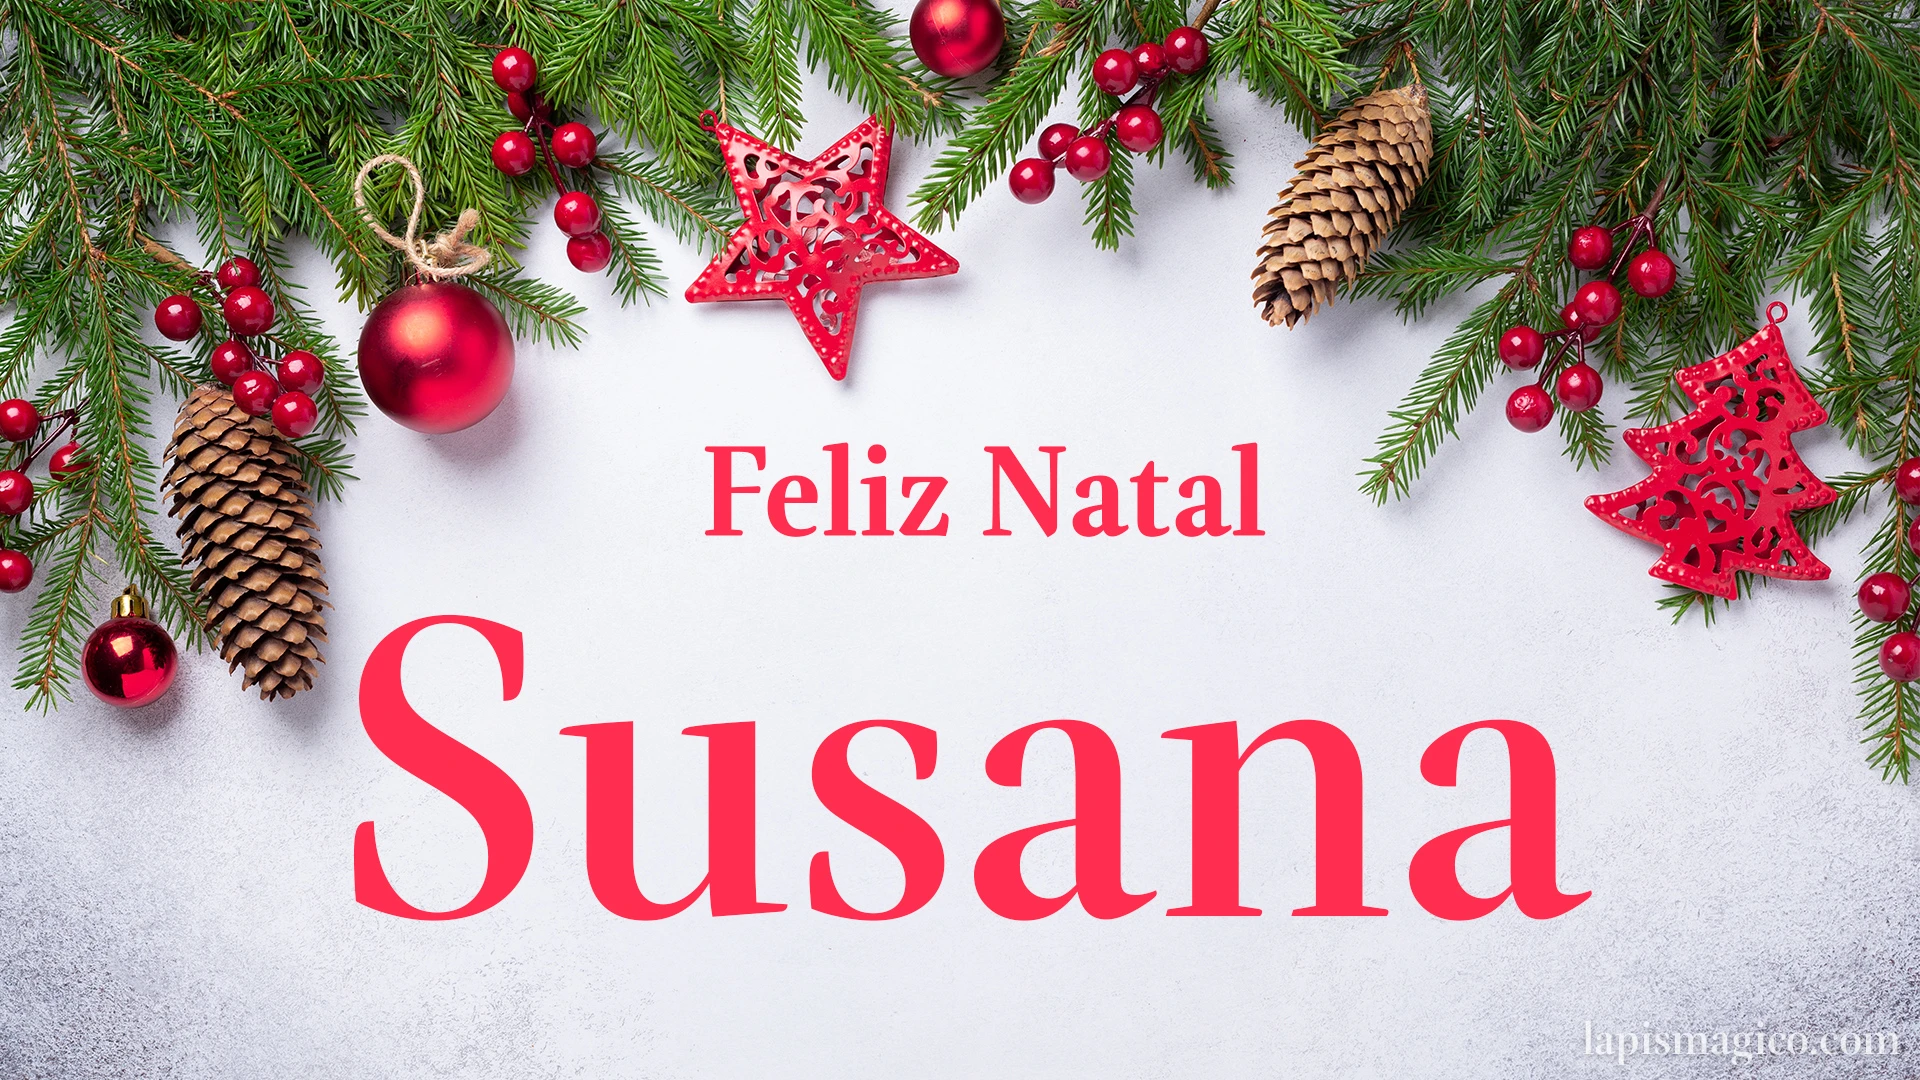 Oh Susana, cinco postais de Feliz Natal Postal com o teu nome